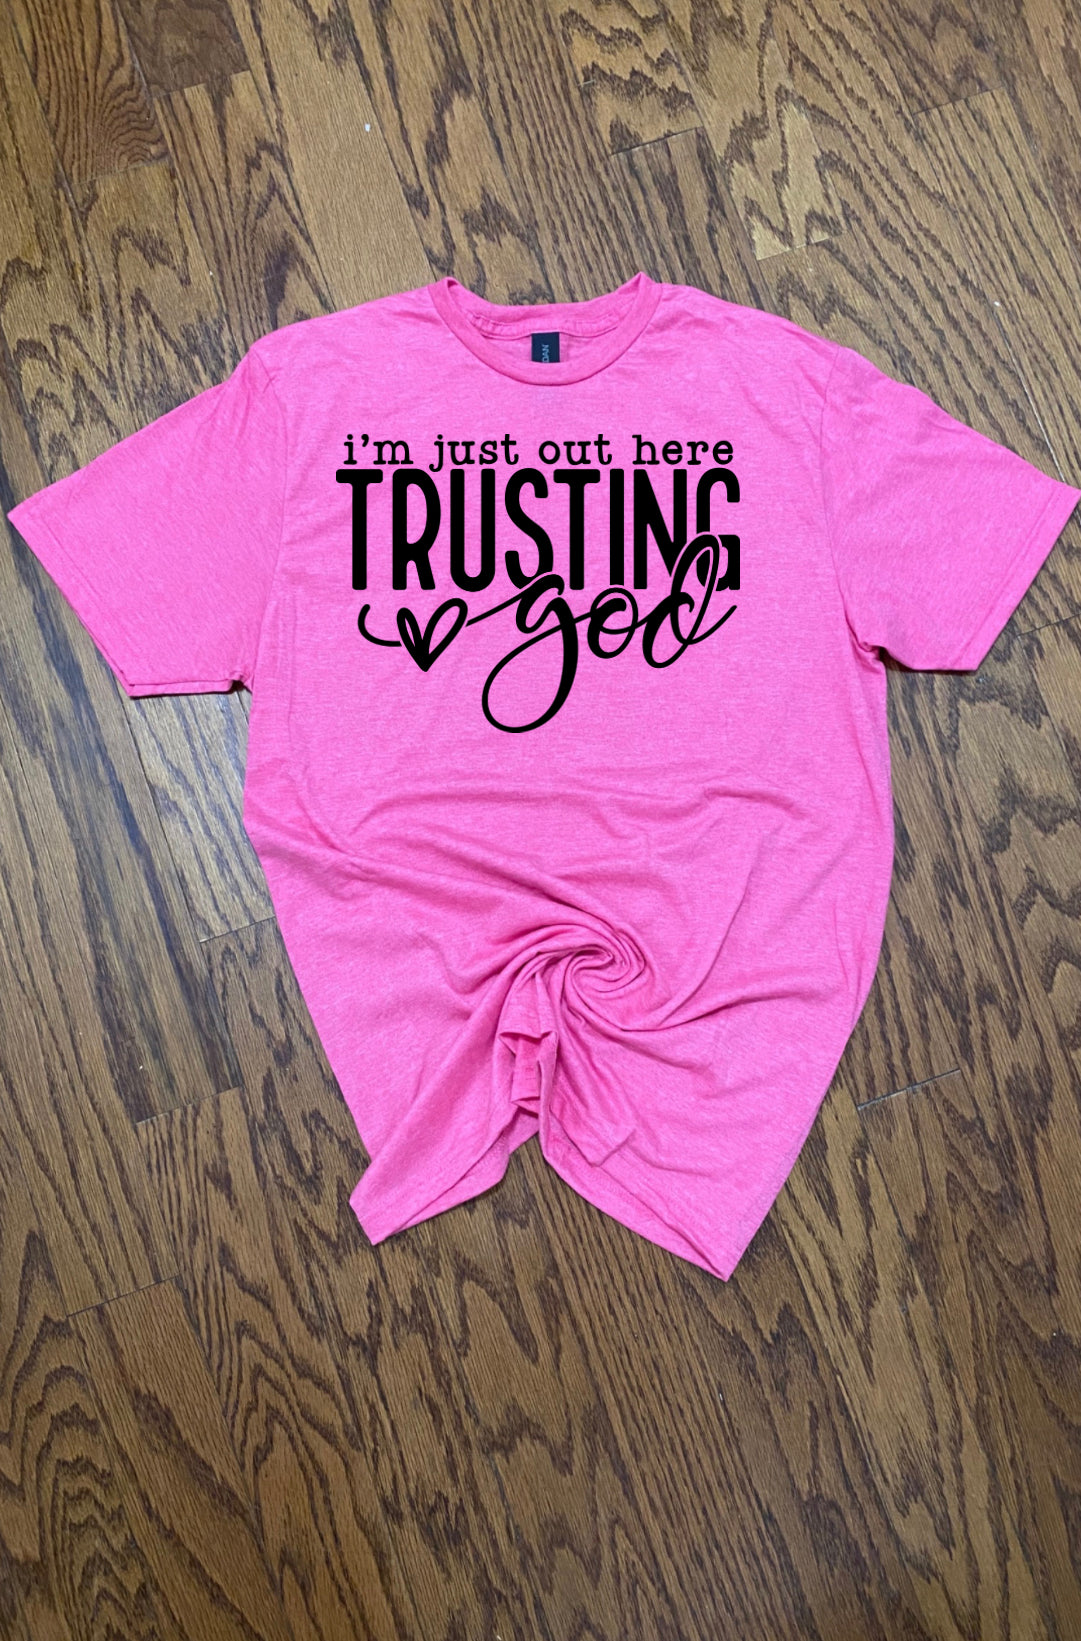 SALE10 Trusting God